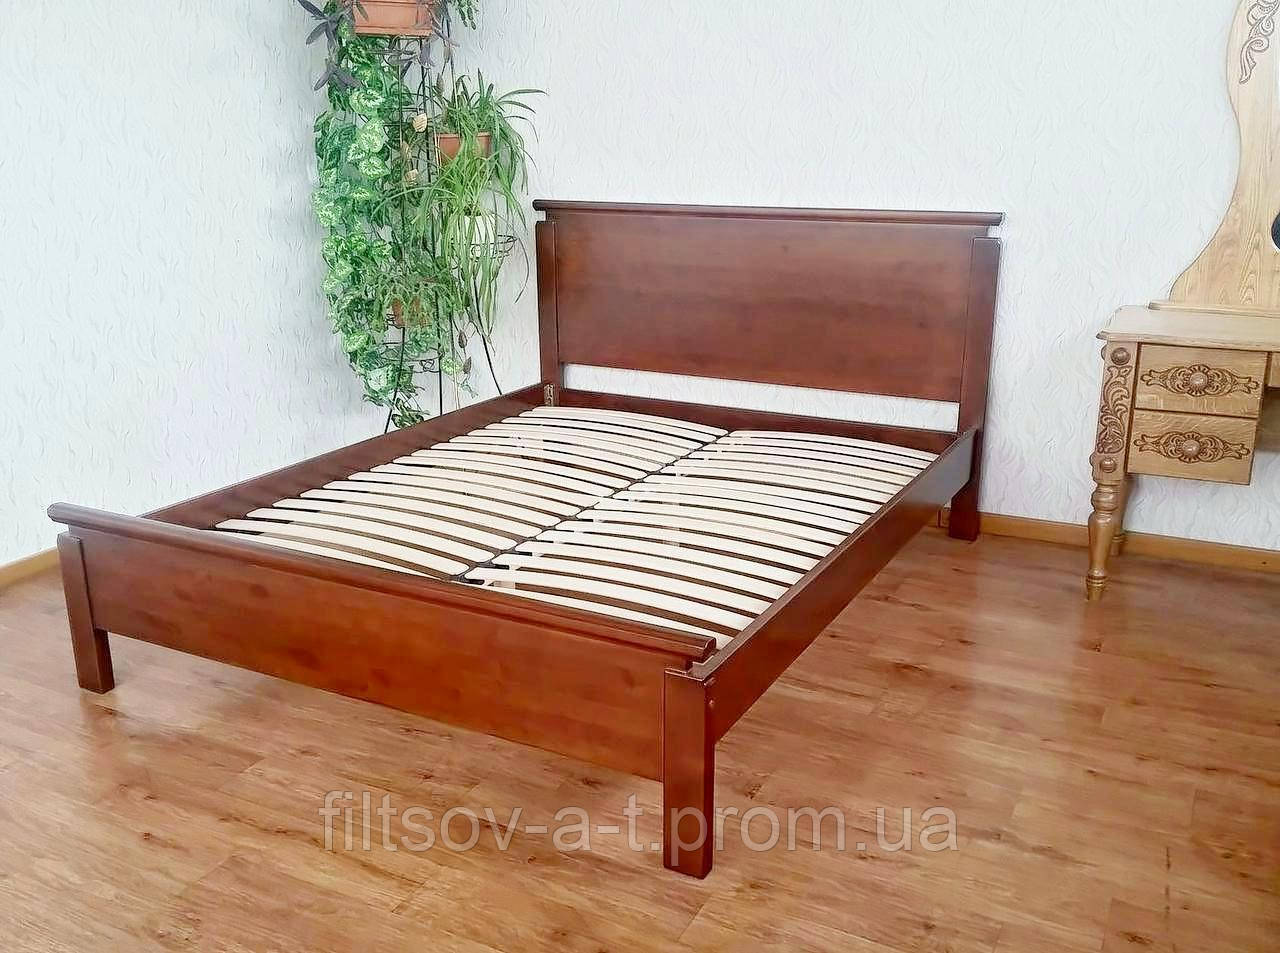 Дерев'яні меблі для спальні від виробника "Падині" (двоспальне ліжко, 2 тумбочки)